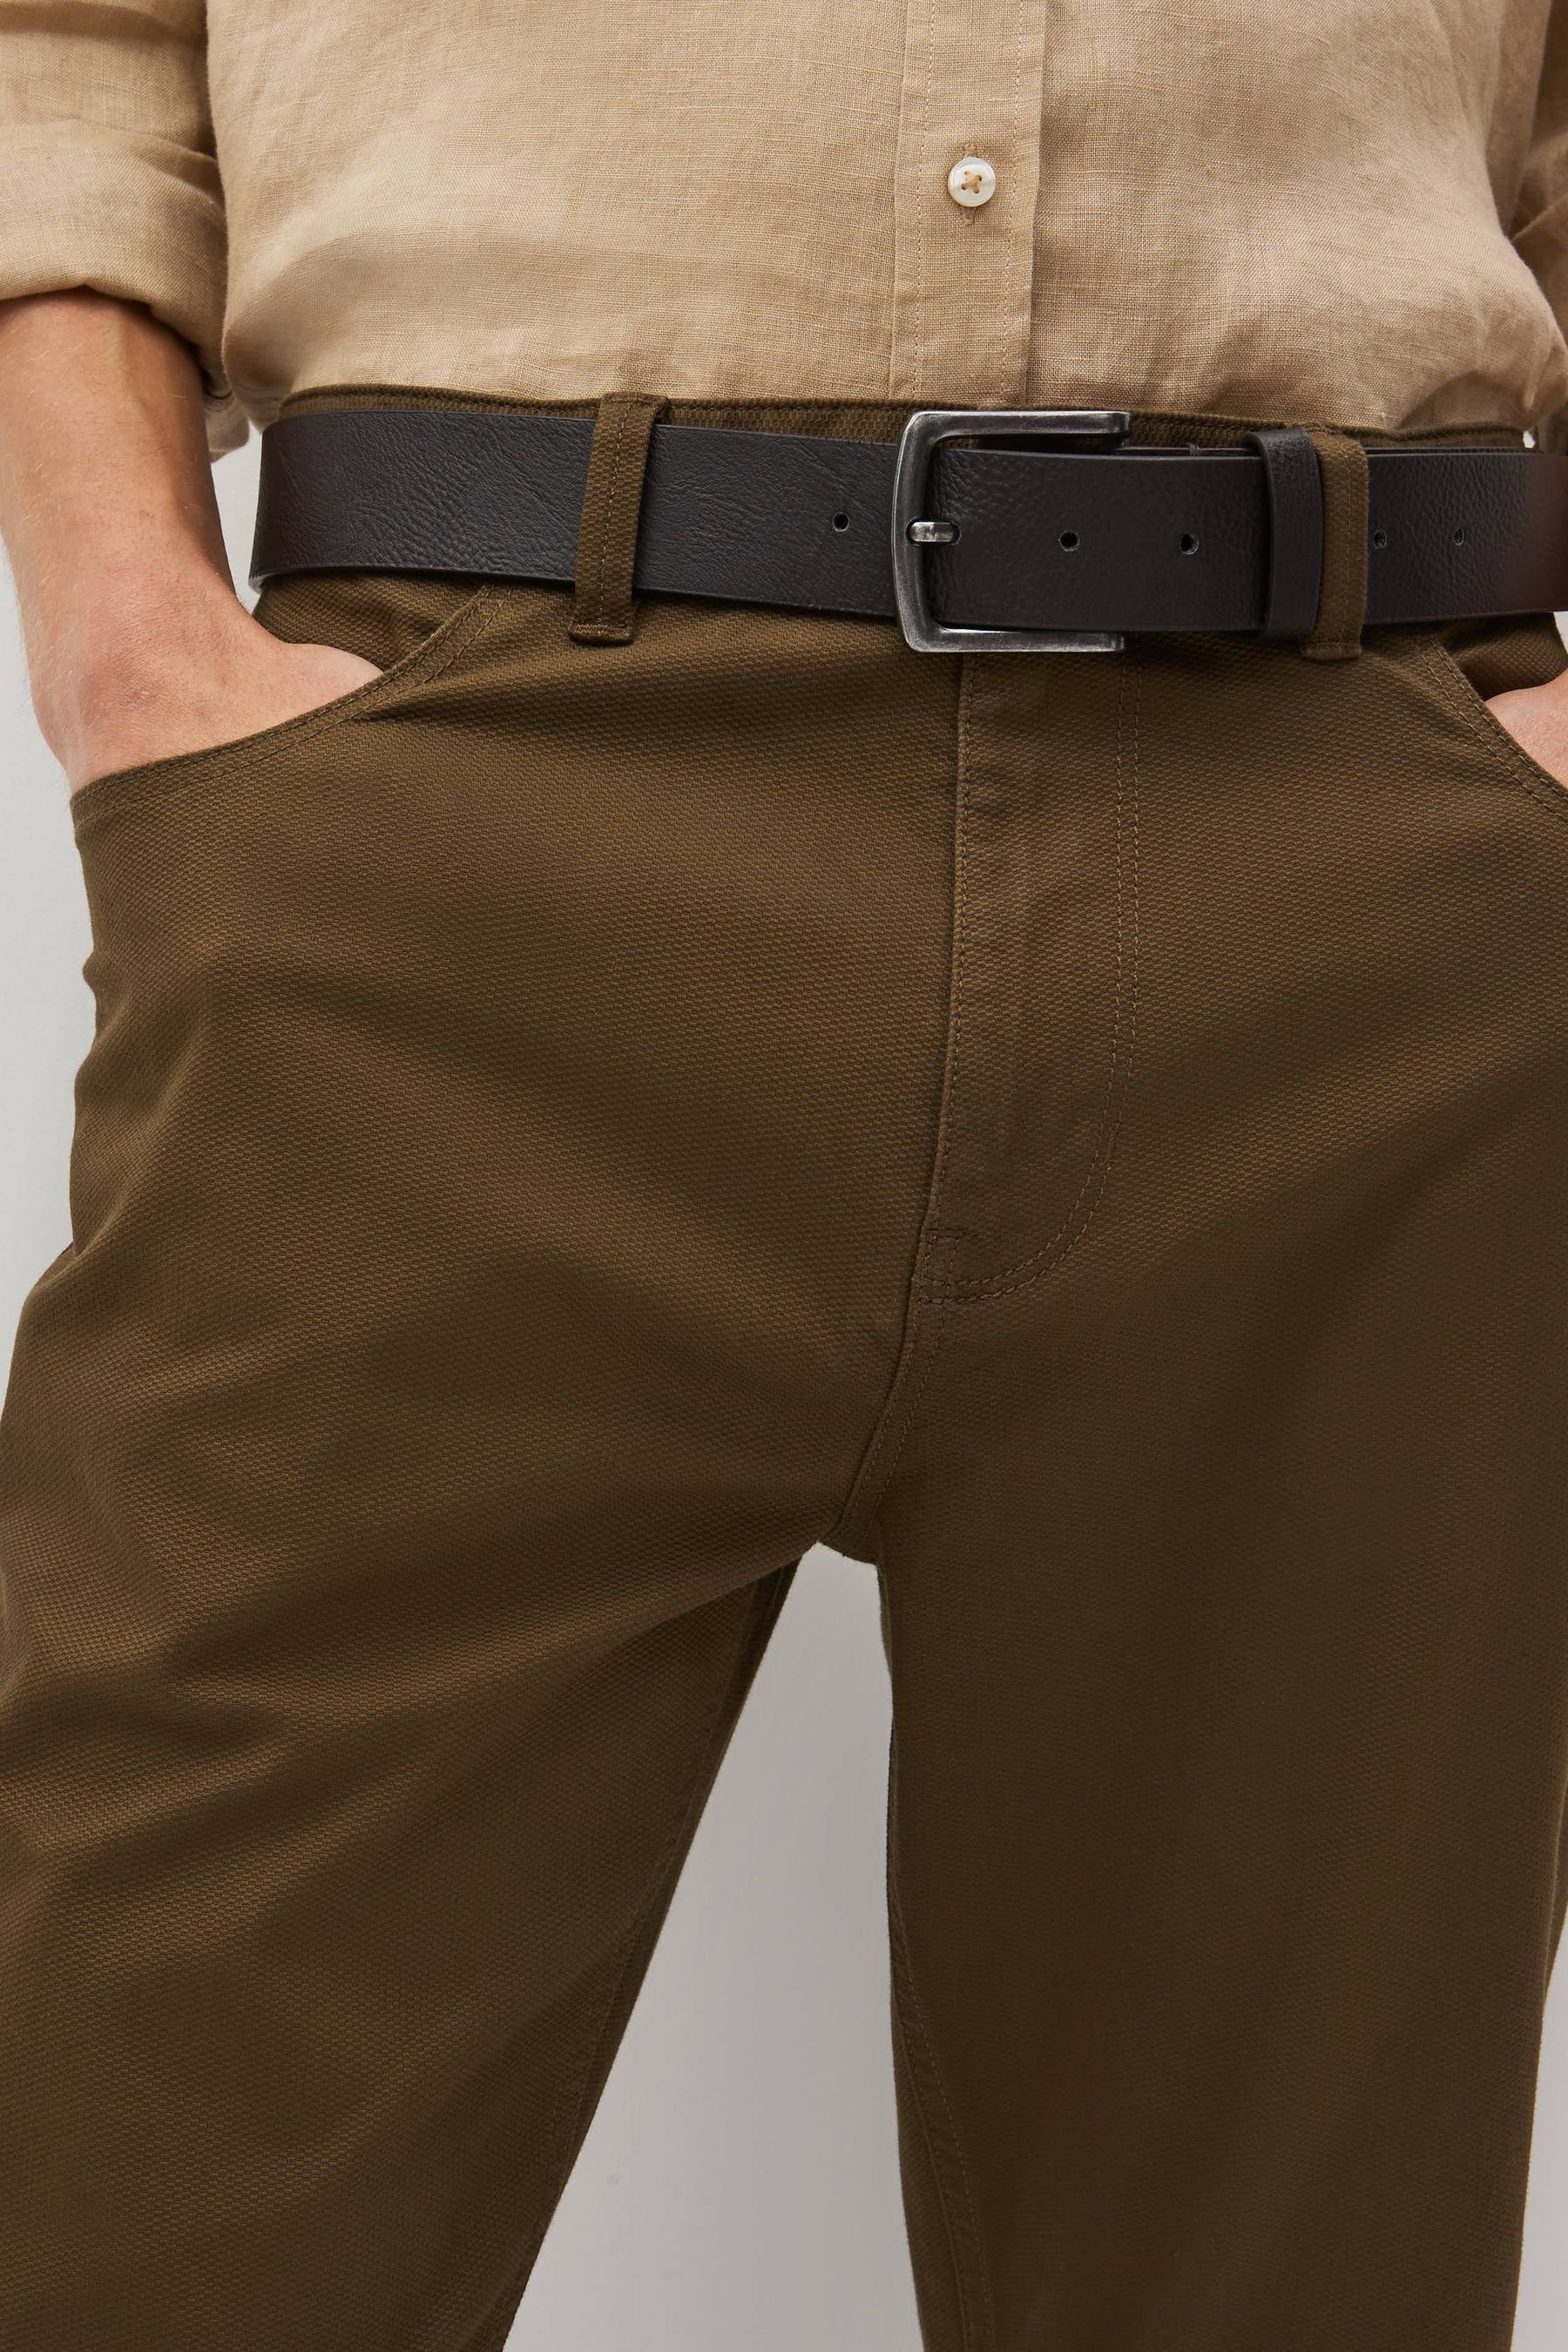 Hose Next Fit und 5 Slim 5-Pocket-Hose Taschen Tan Gürtel Brown (2-tlg) mit